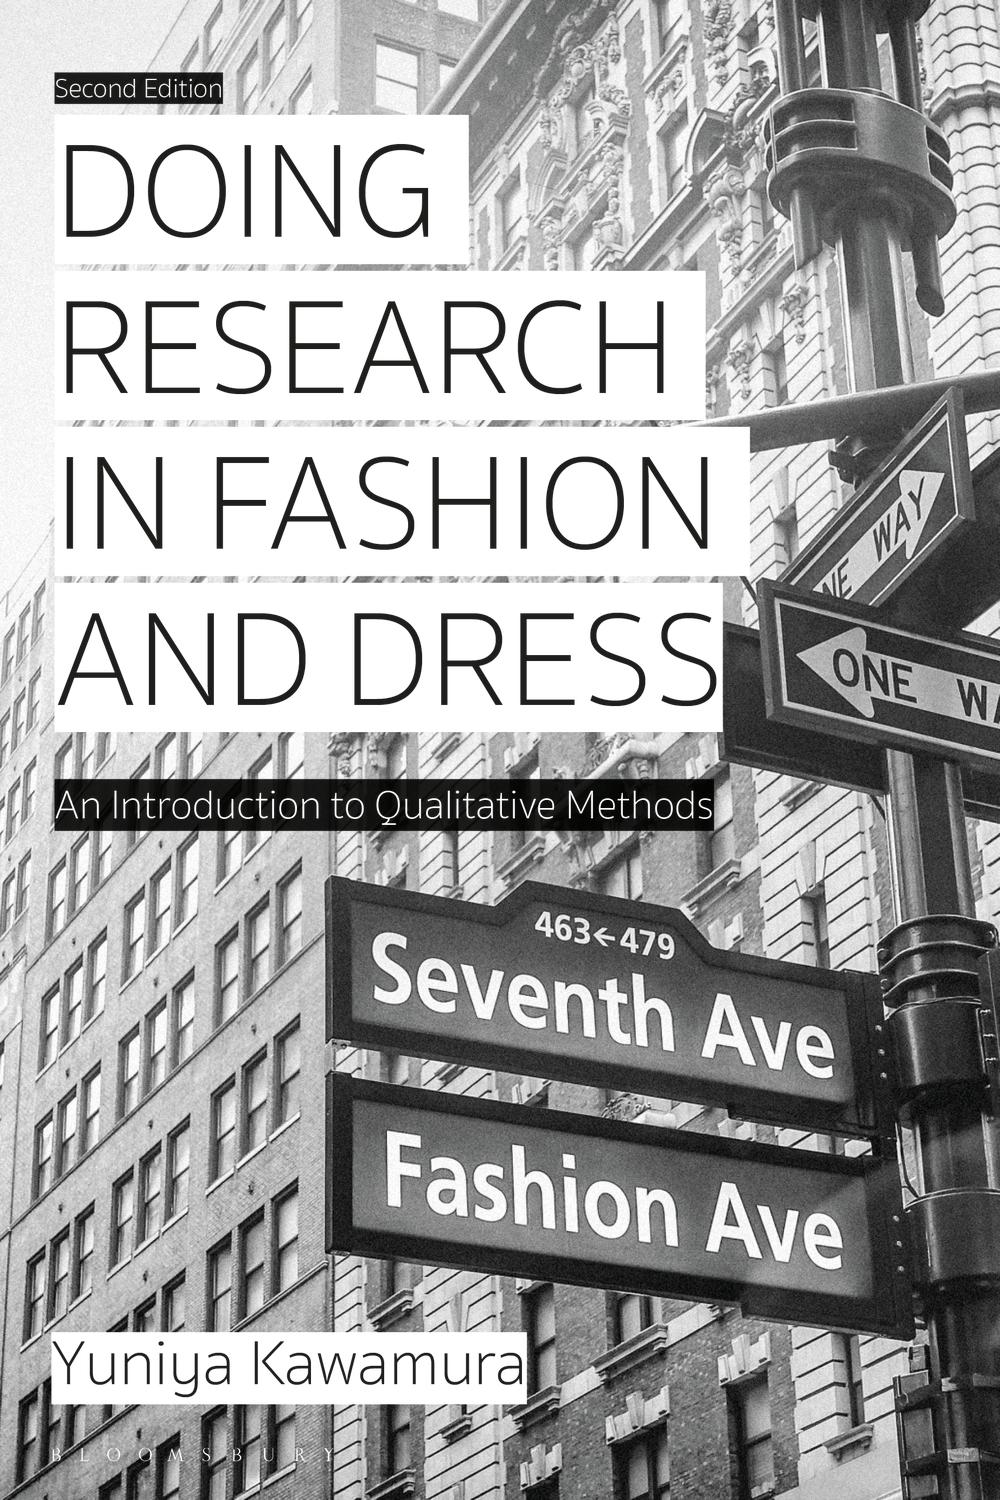 Doing Research in Fashion and Dress - Yuniya Kawamura